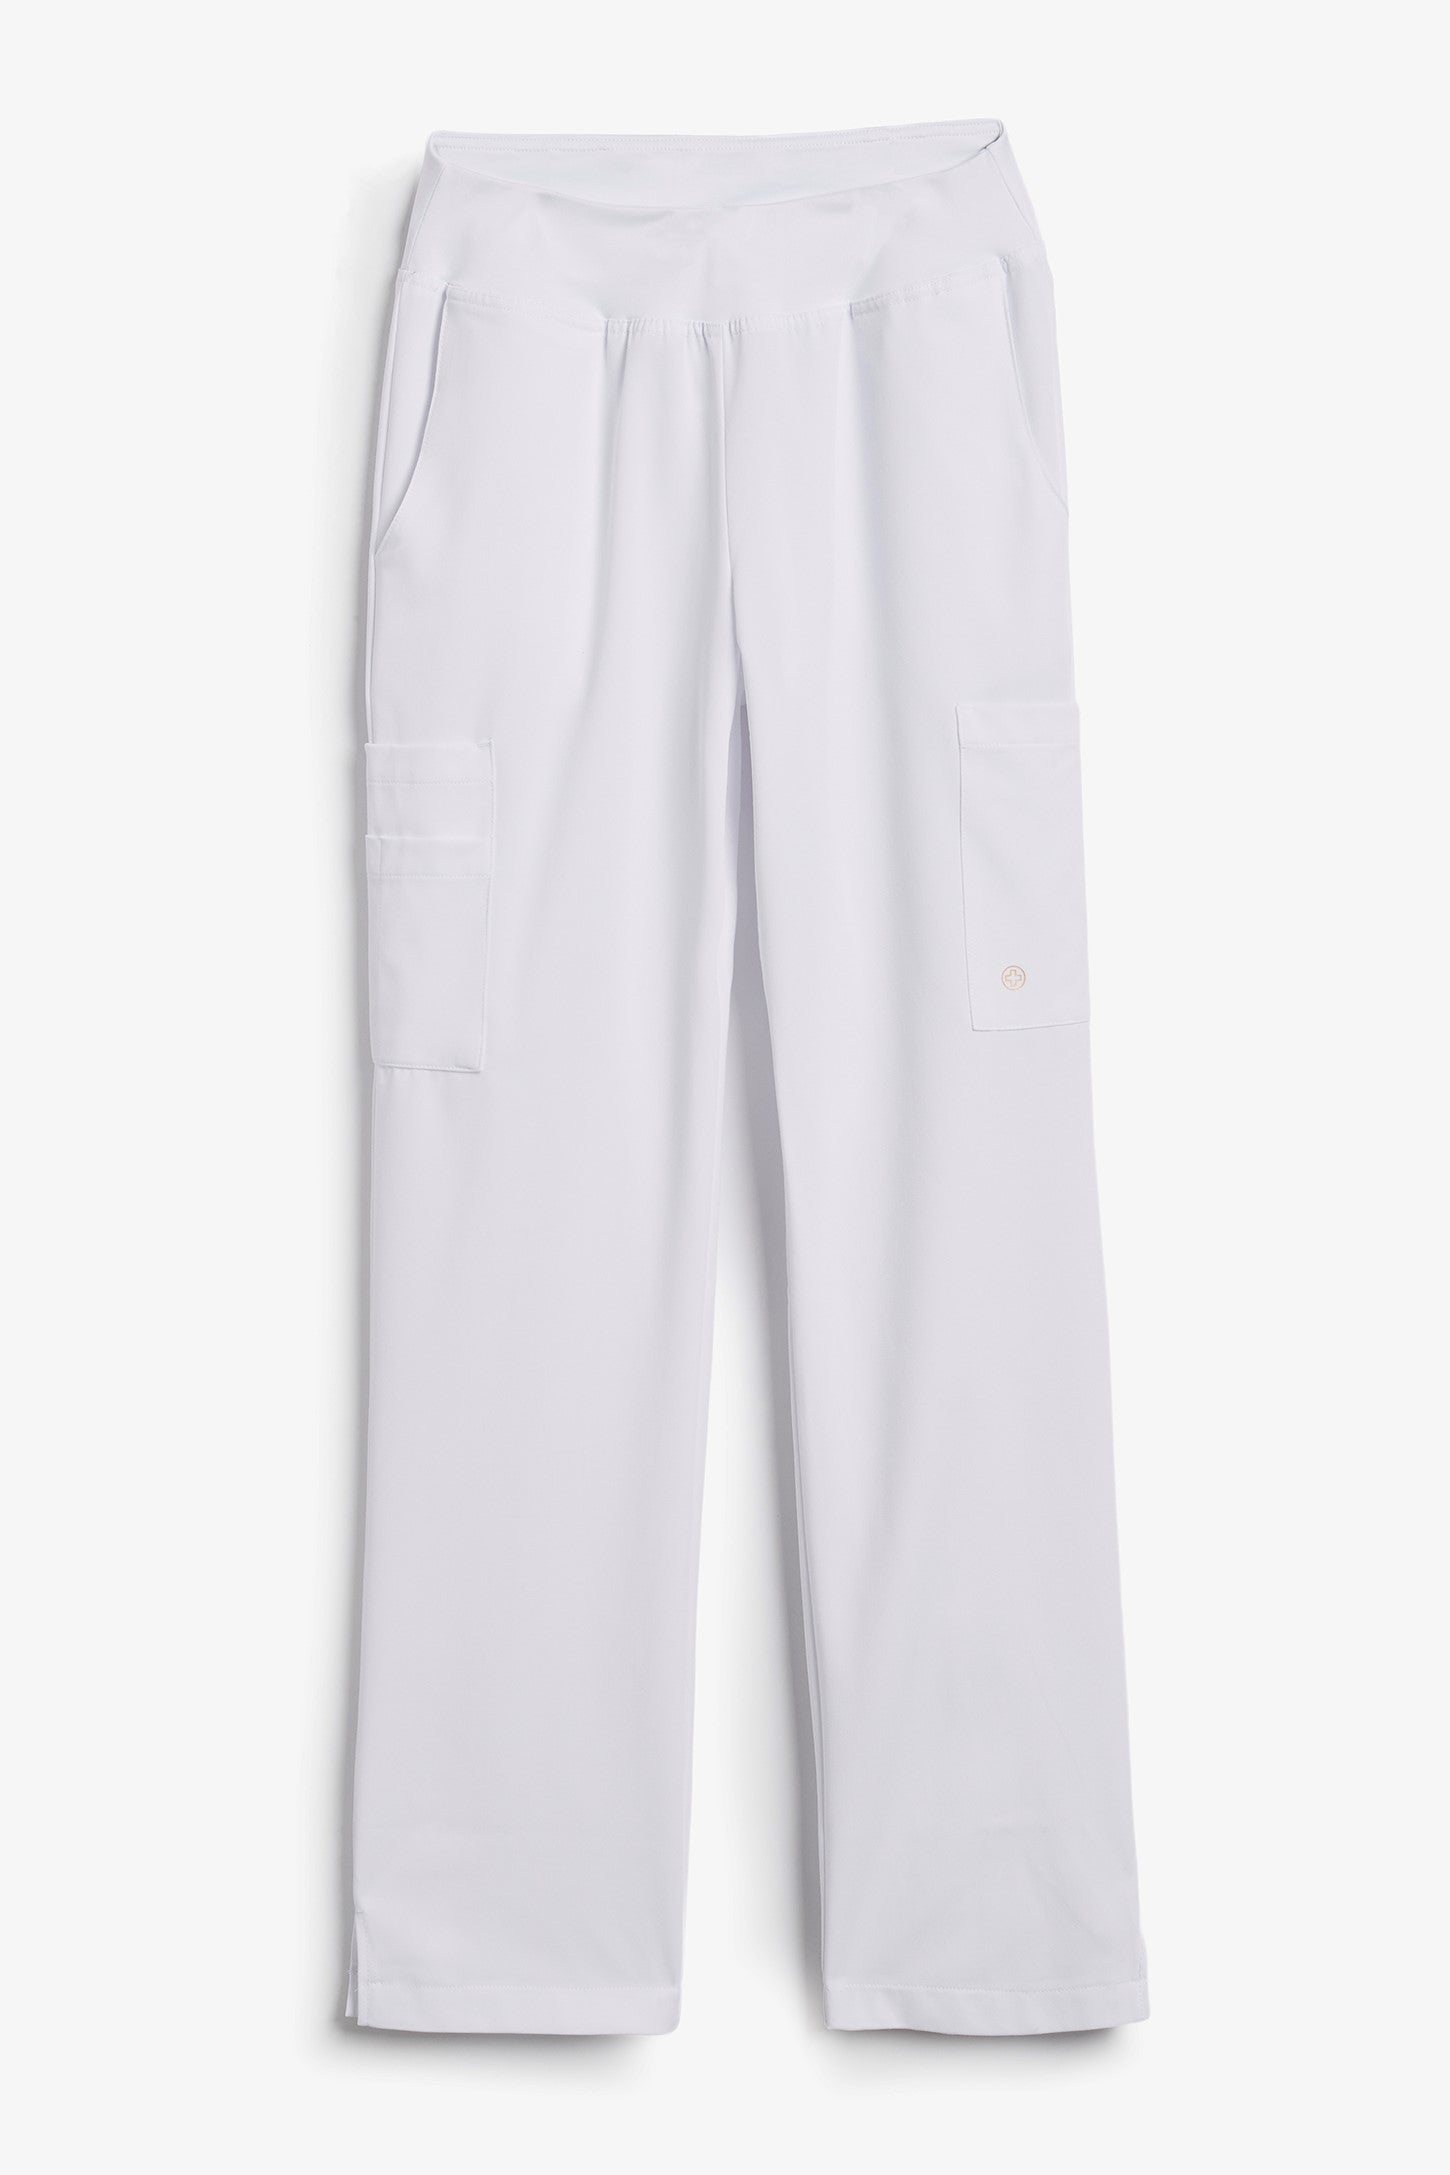 Pantalon yoga uniforme infirmière - Femme && BLANC